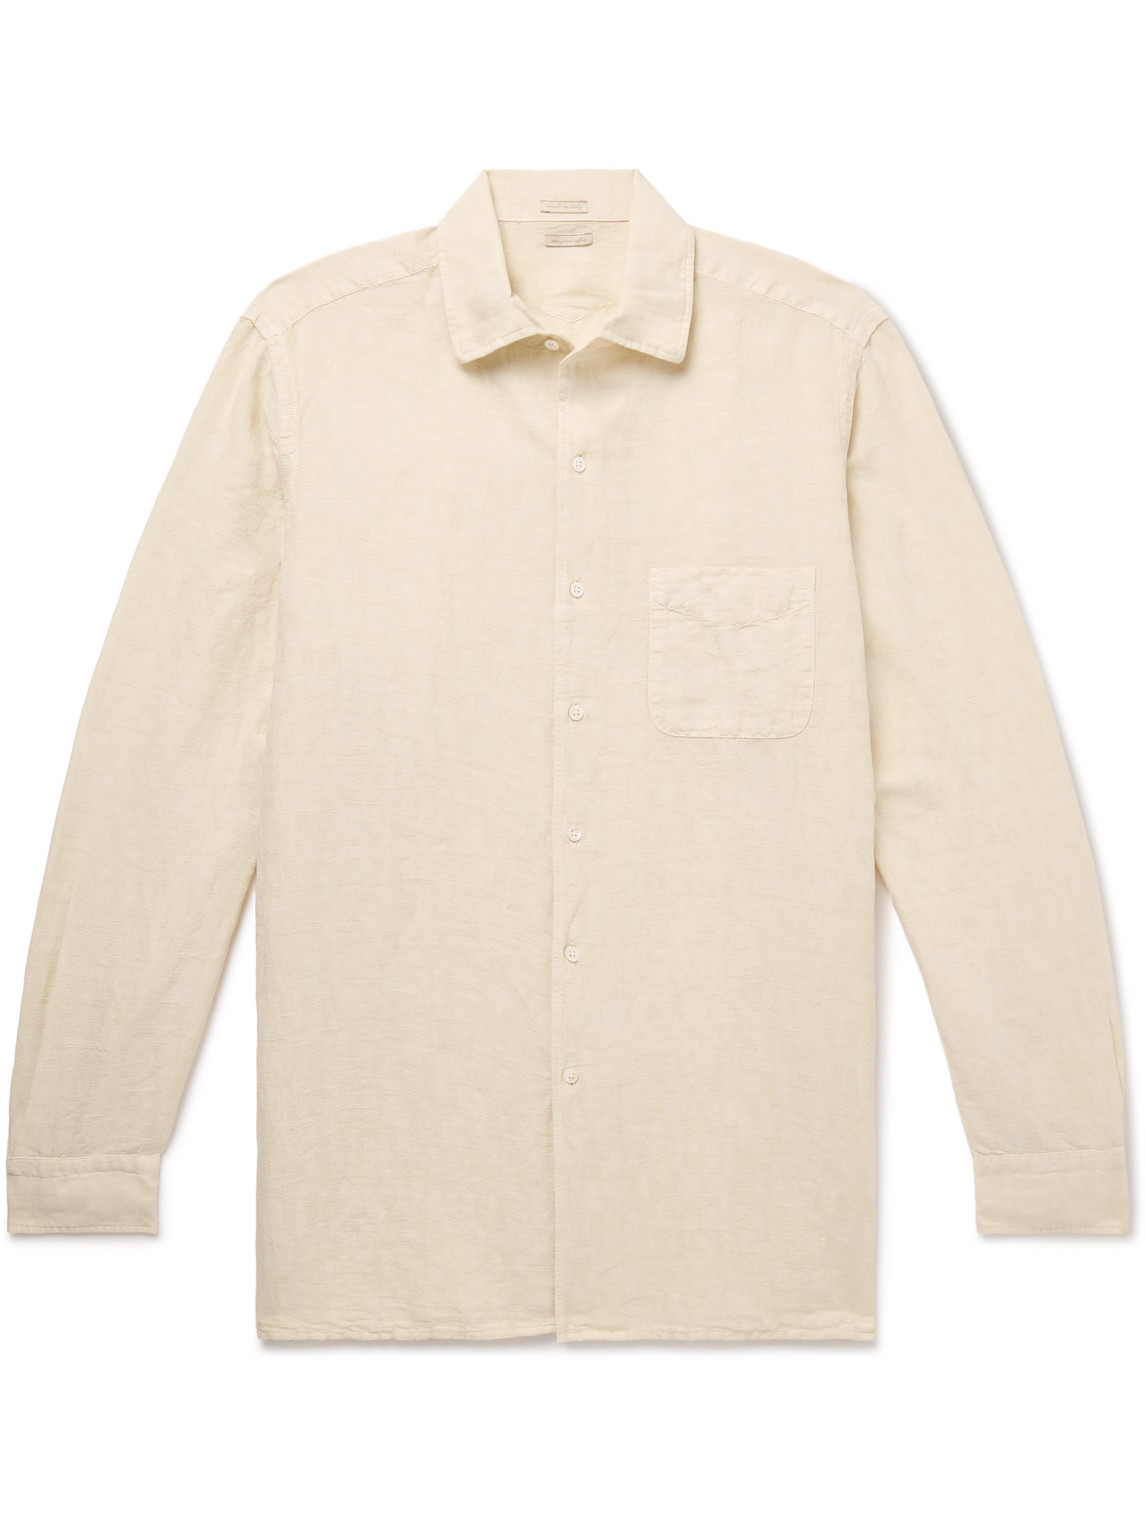 Massimo Alba - Bowles Linen and Cotton-Blend Shirt - Men - Neutrals - XL von Massimo Alba